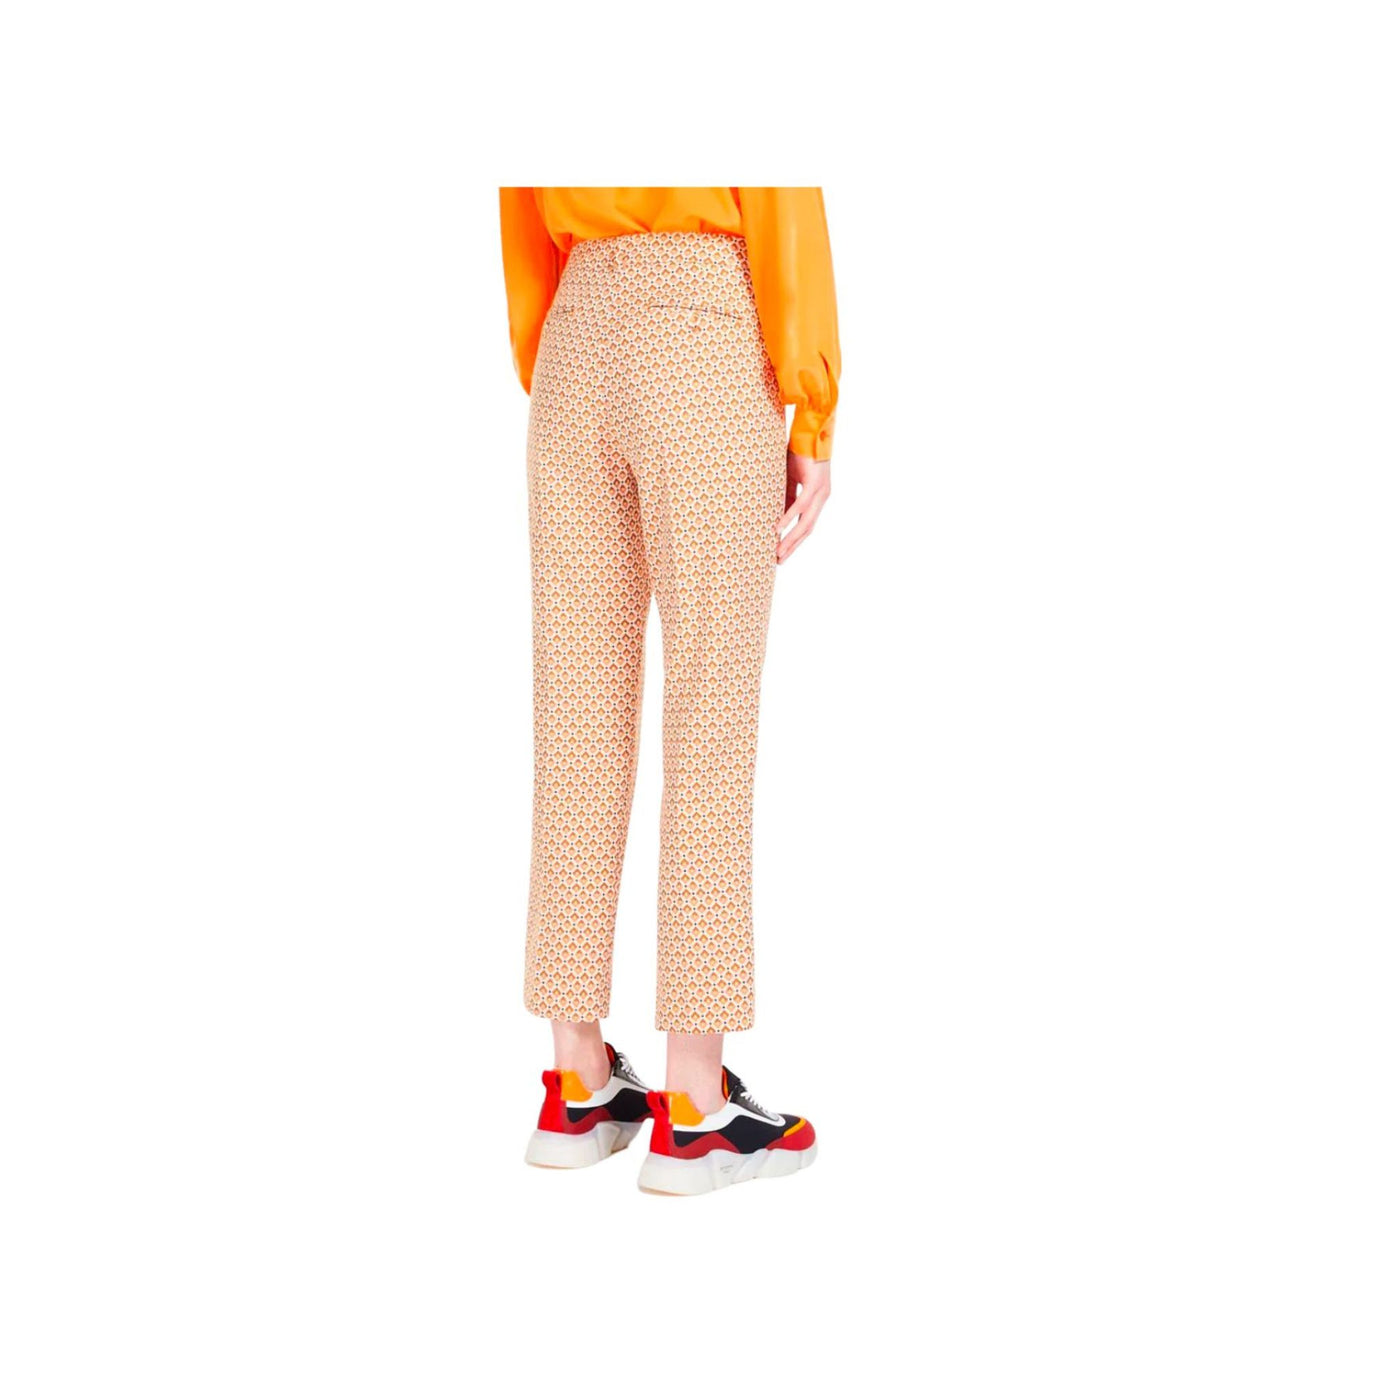 Pantalone donna con fantasia colorata